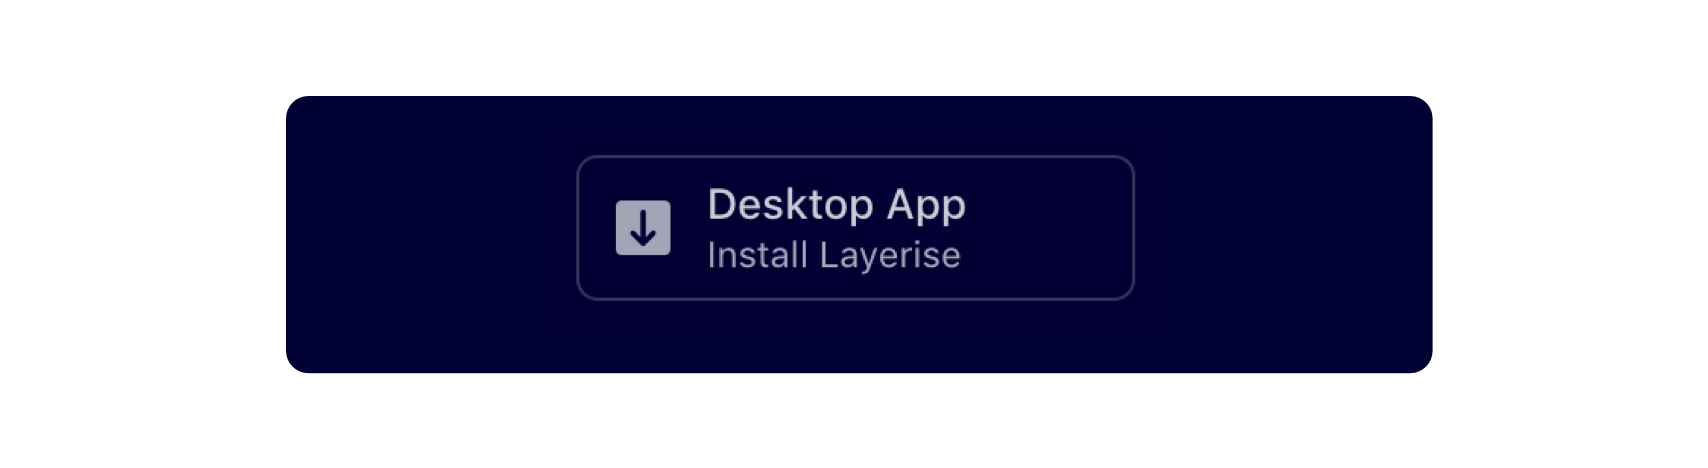 Layerise - Download Desktop App